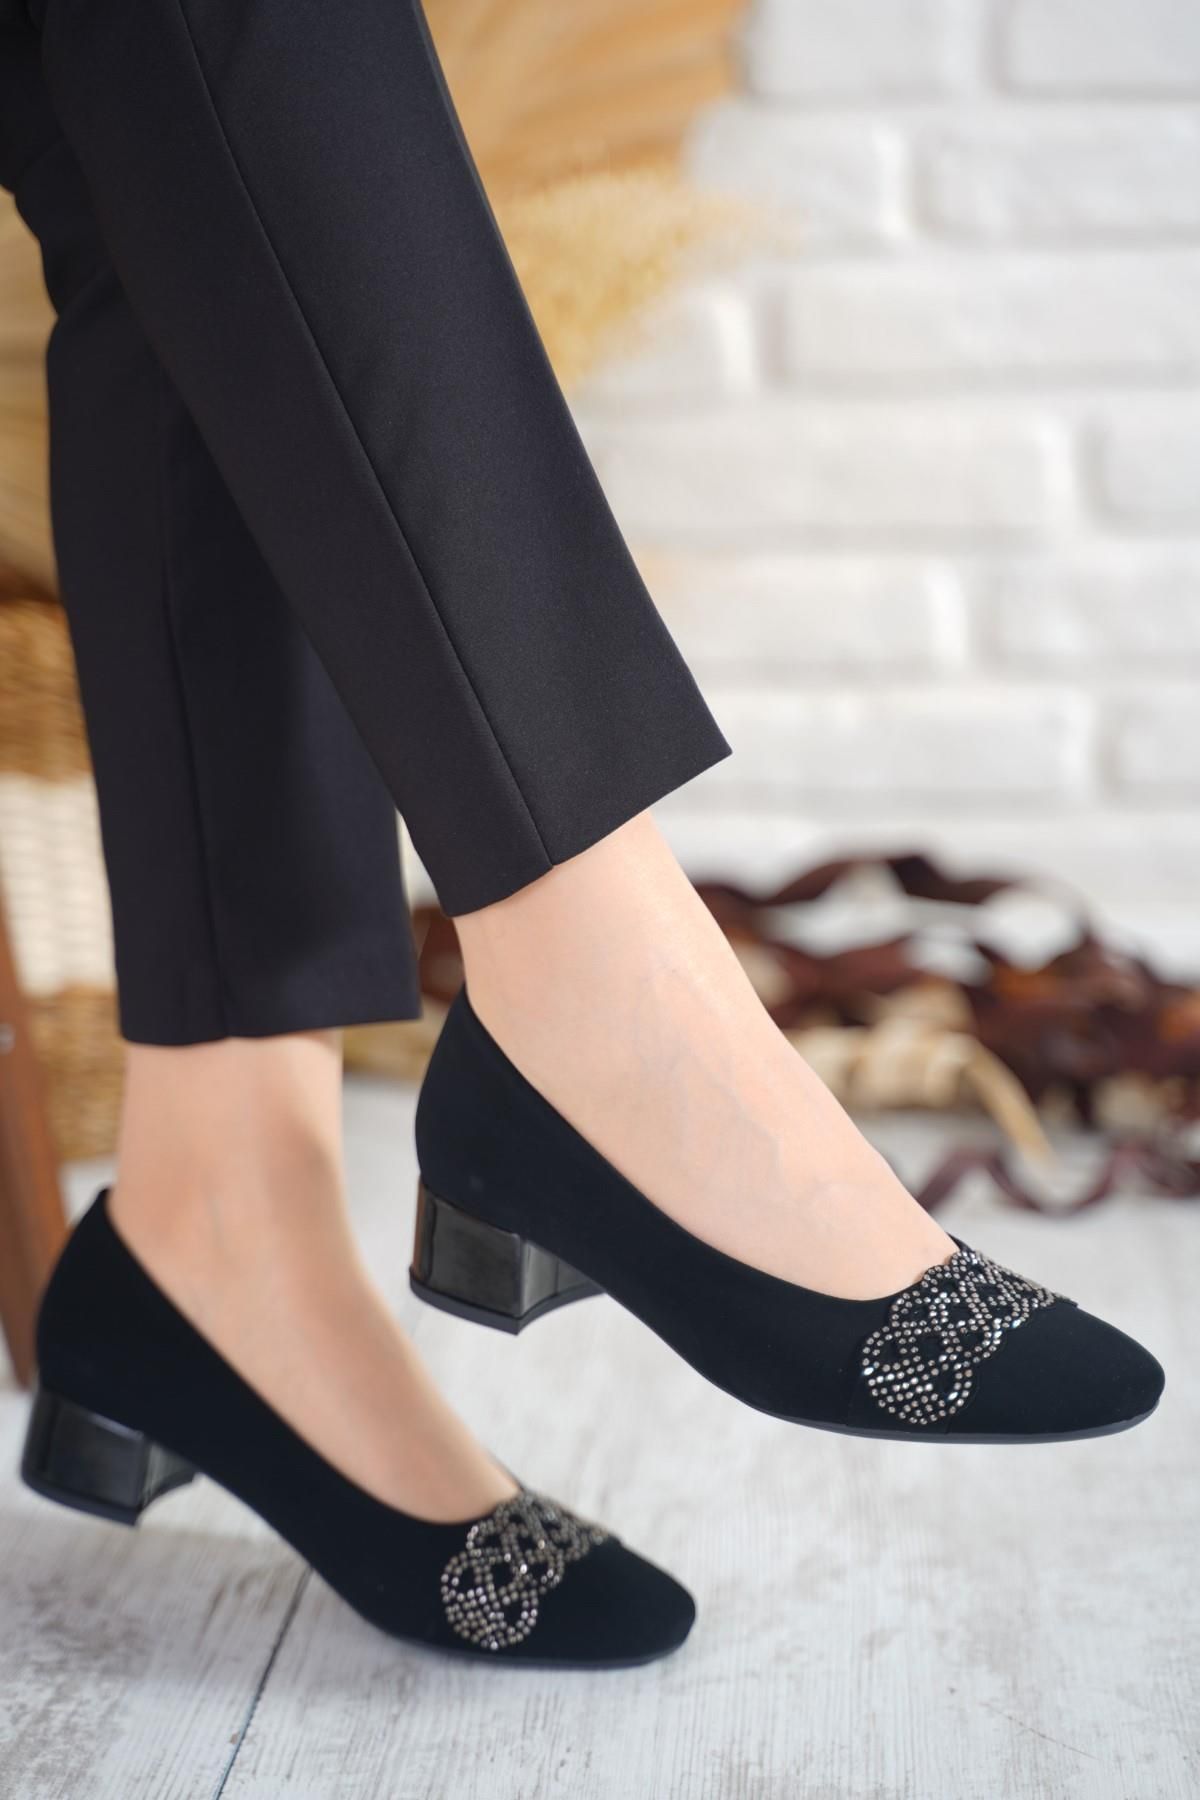 Moda Pie Gizmo Atkı Taşlı Kadın Topuklu Ayakkabı Siyah Süet